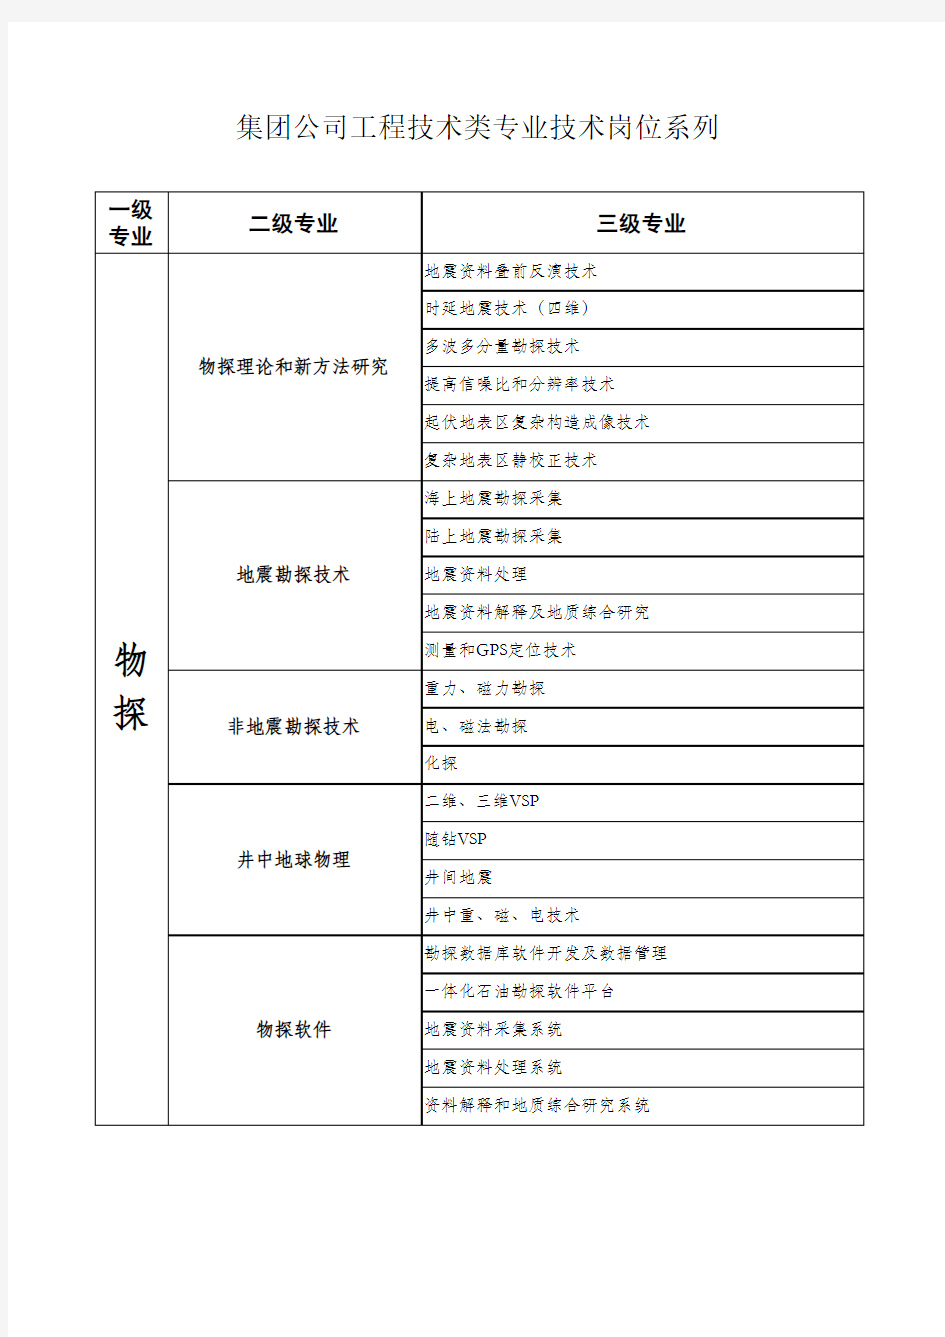 中国石油集团公司工程技术类专业技术岗位系列